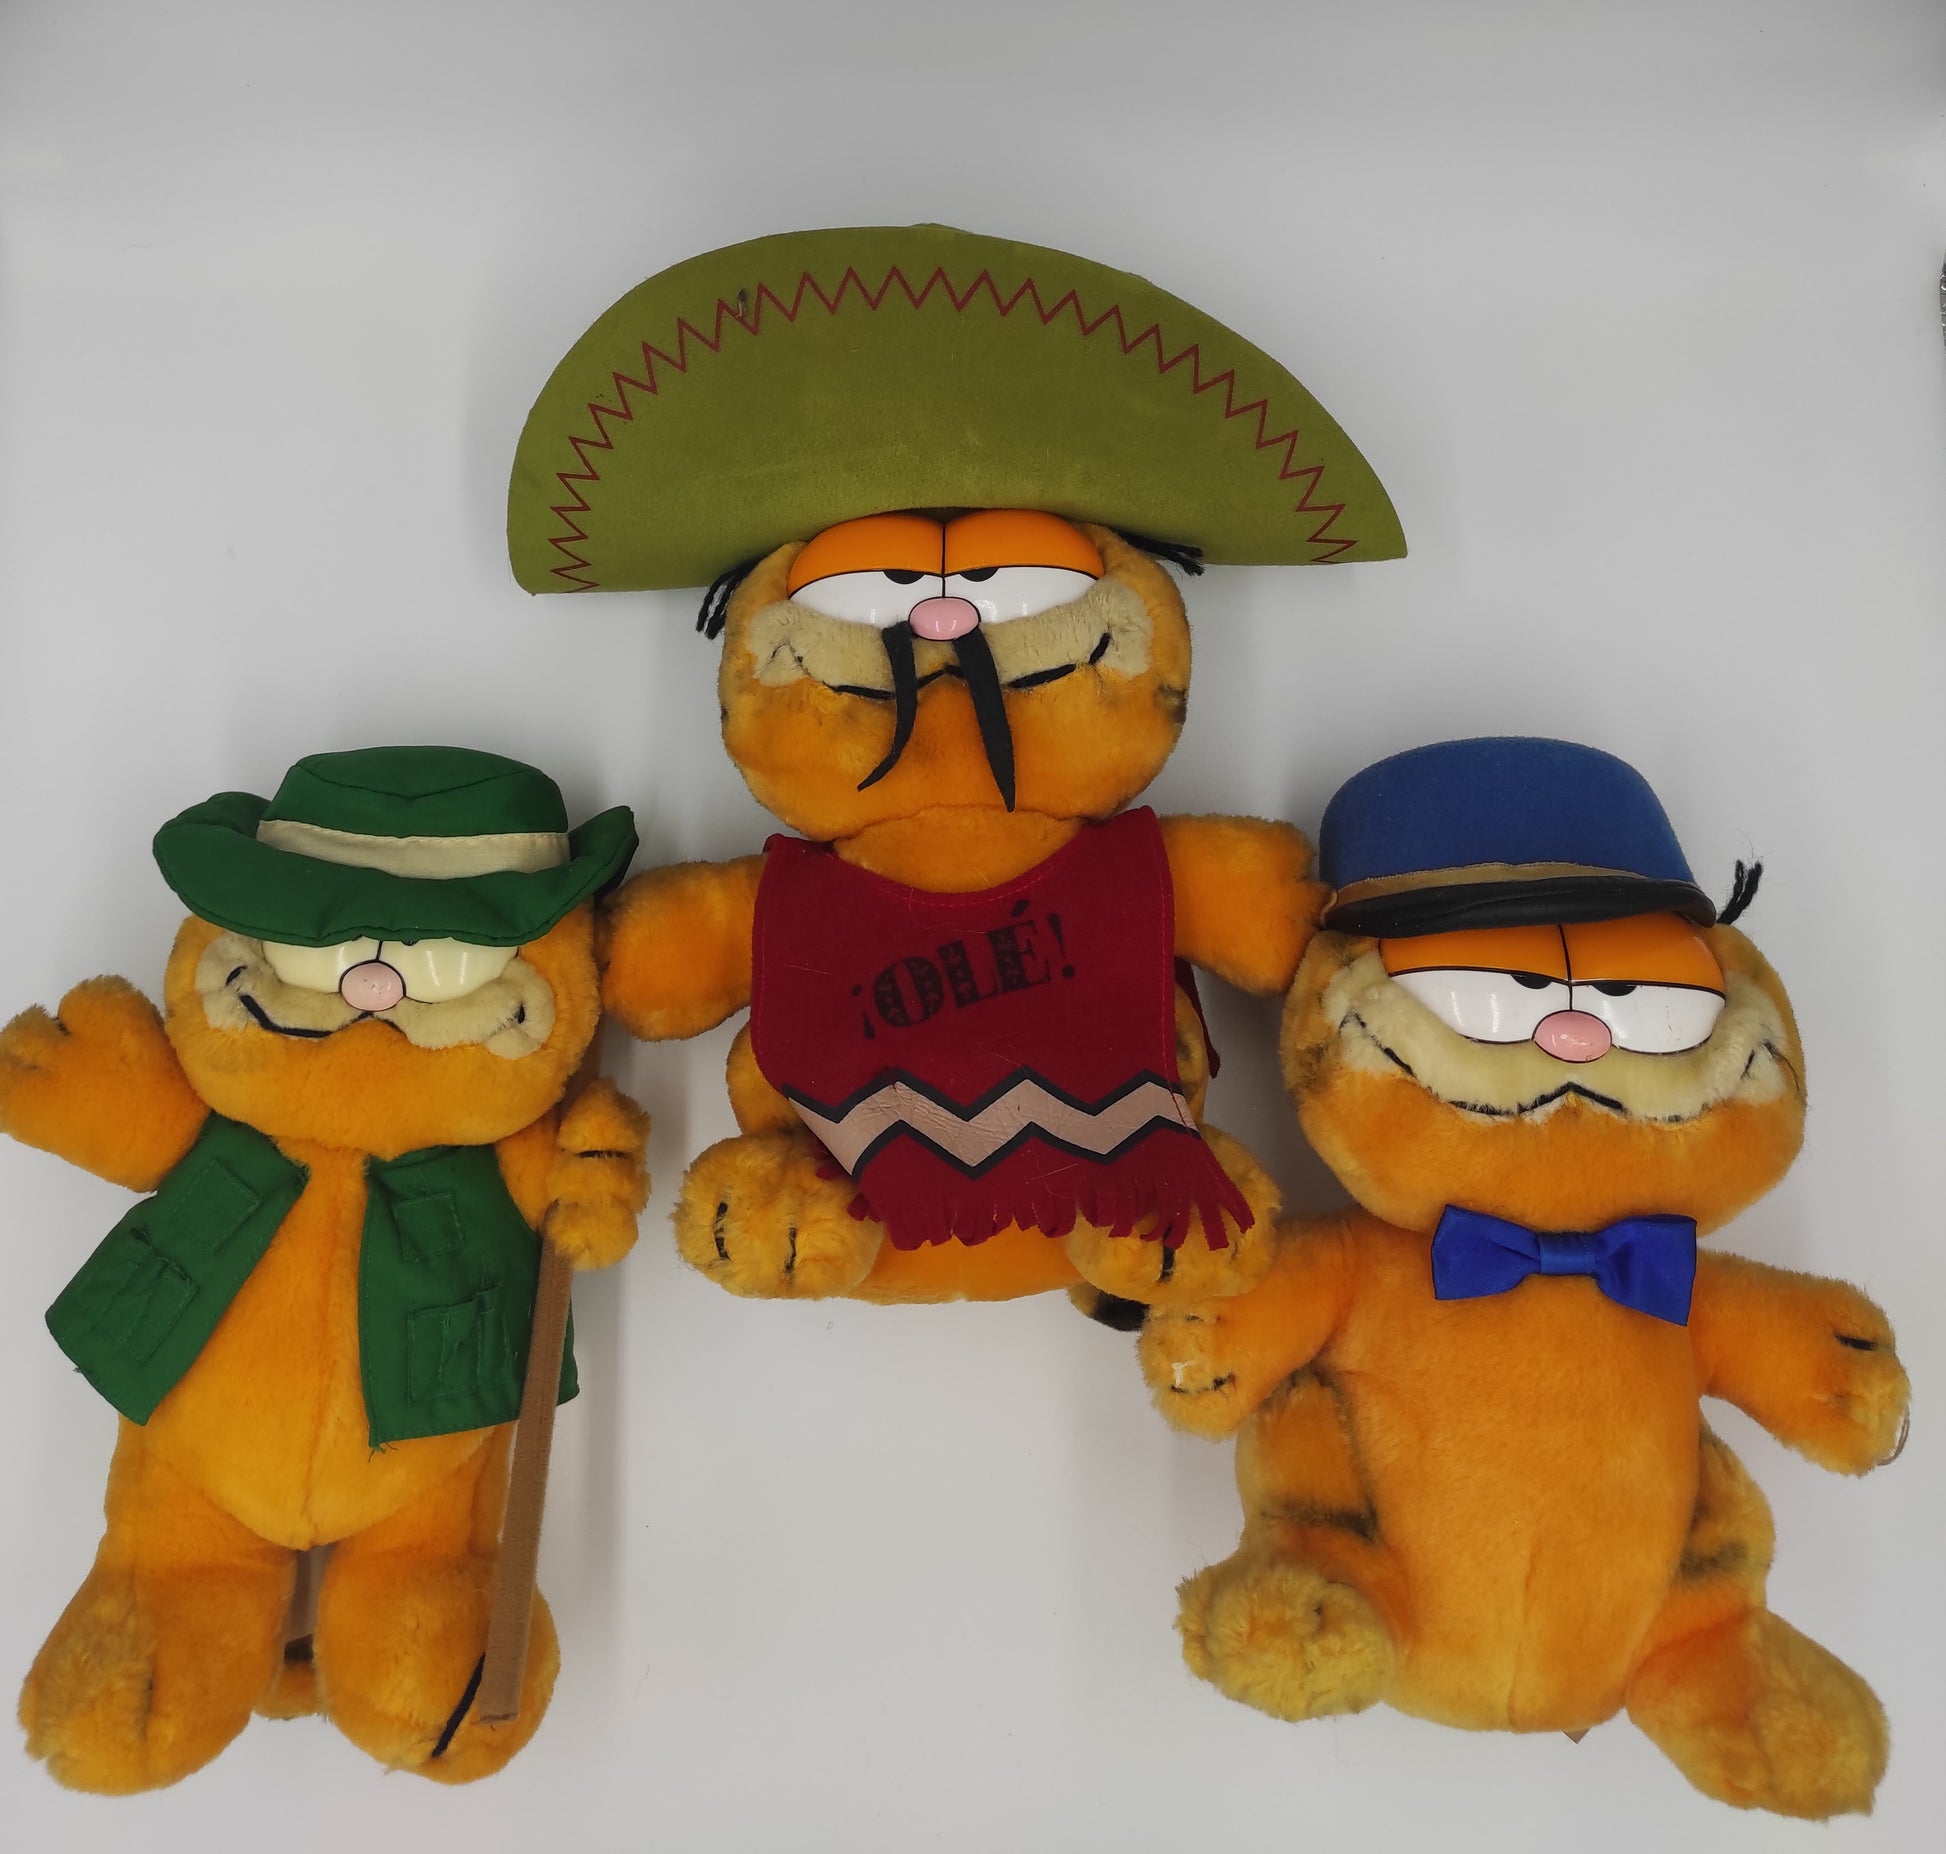 Magnifique peluche Garfield vintage de collection, tenant un cadre